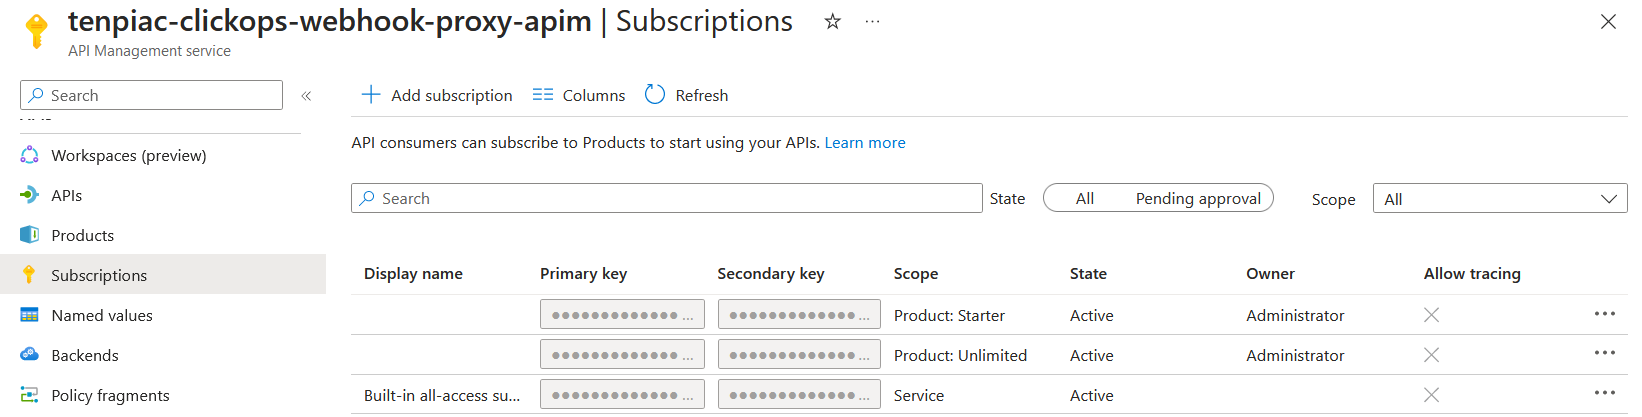 API Management UI showing subscription list